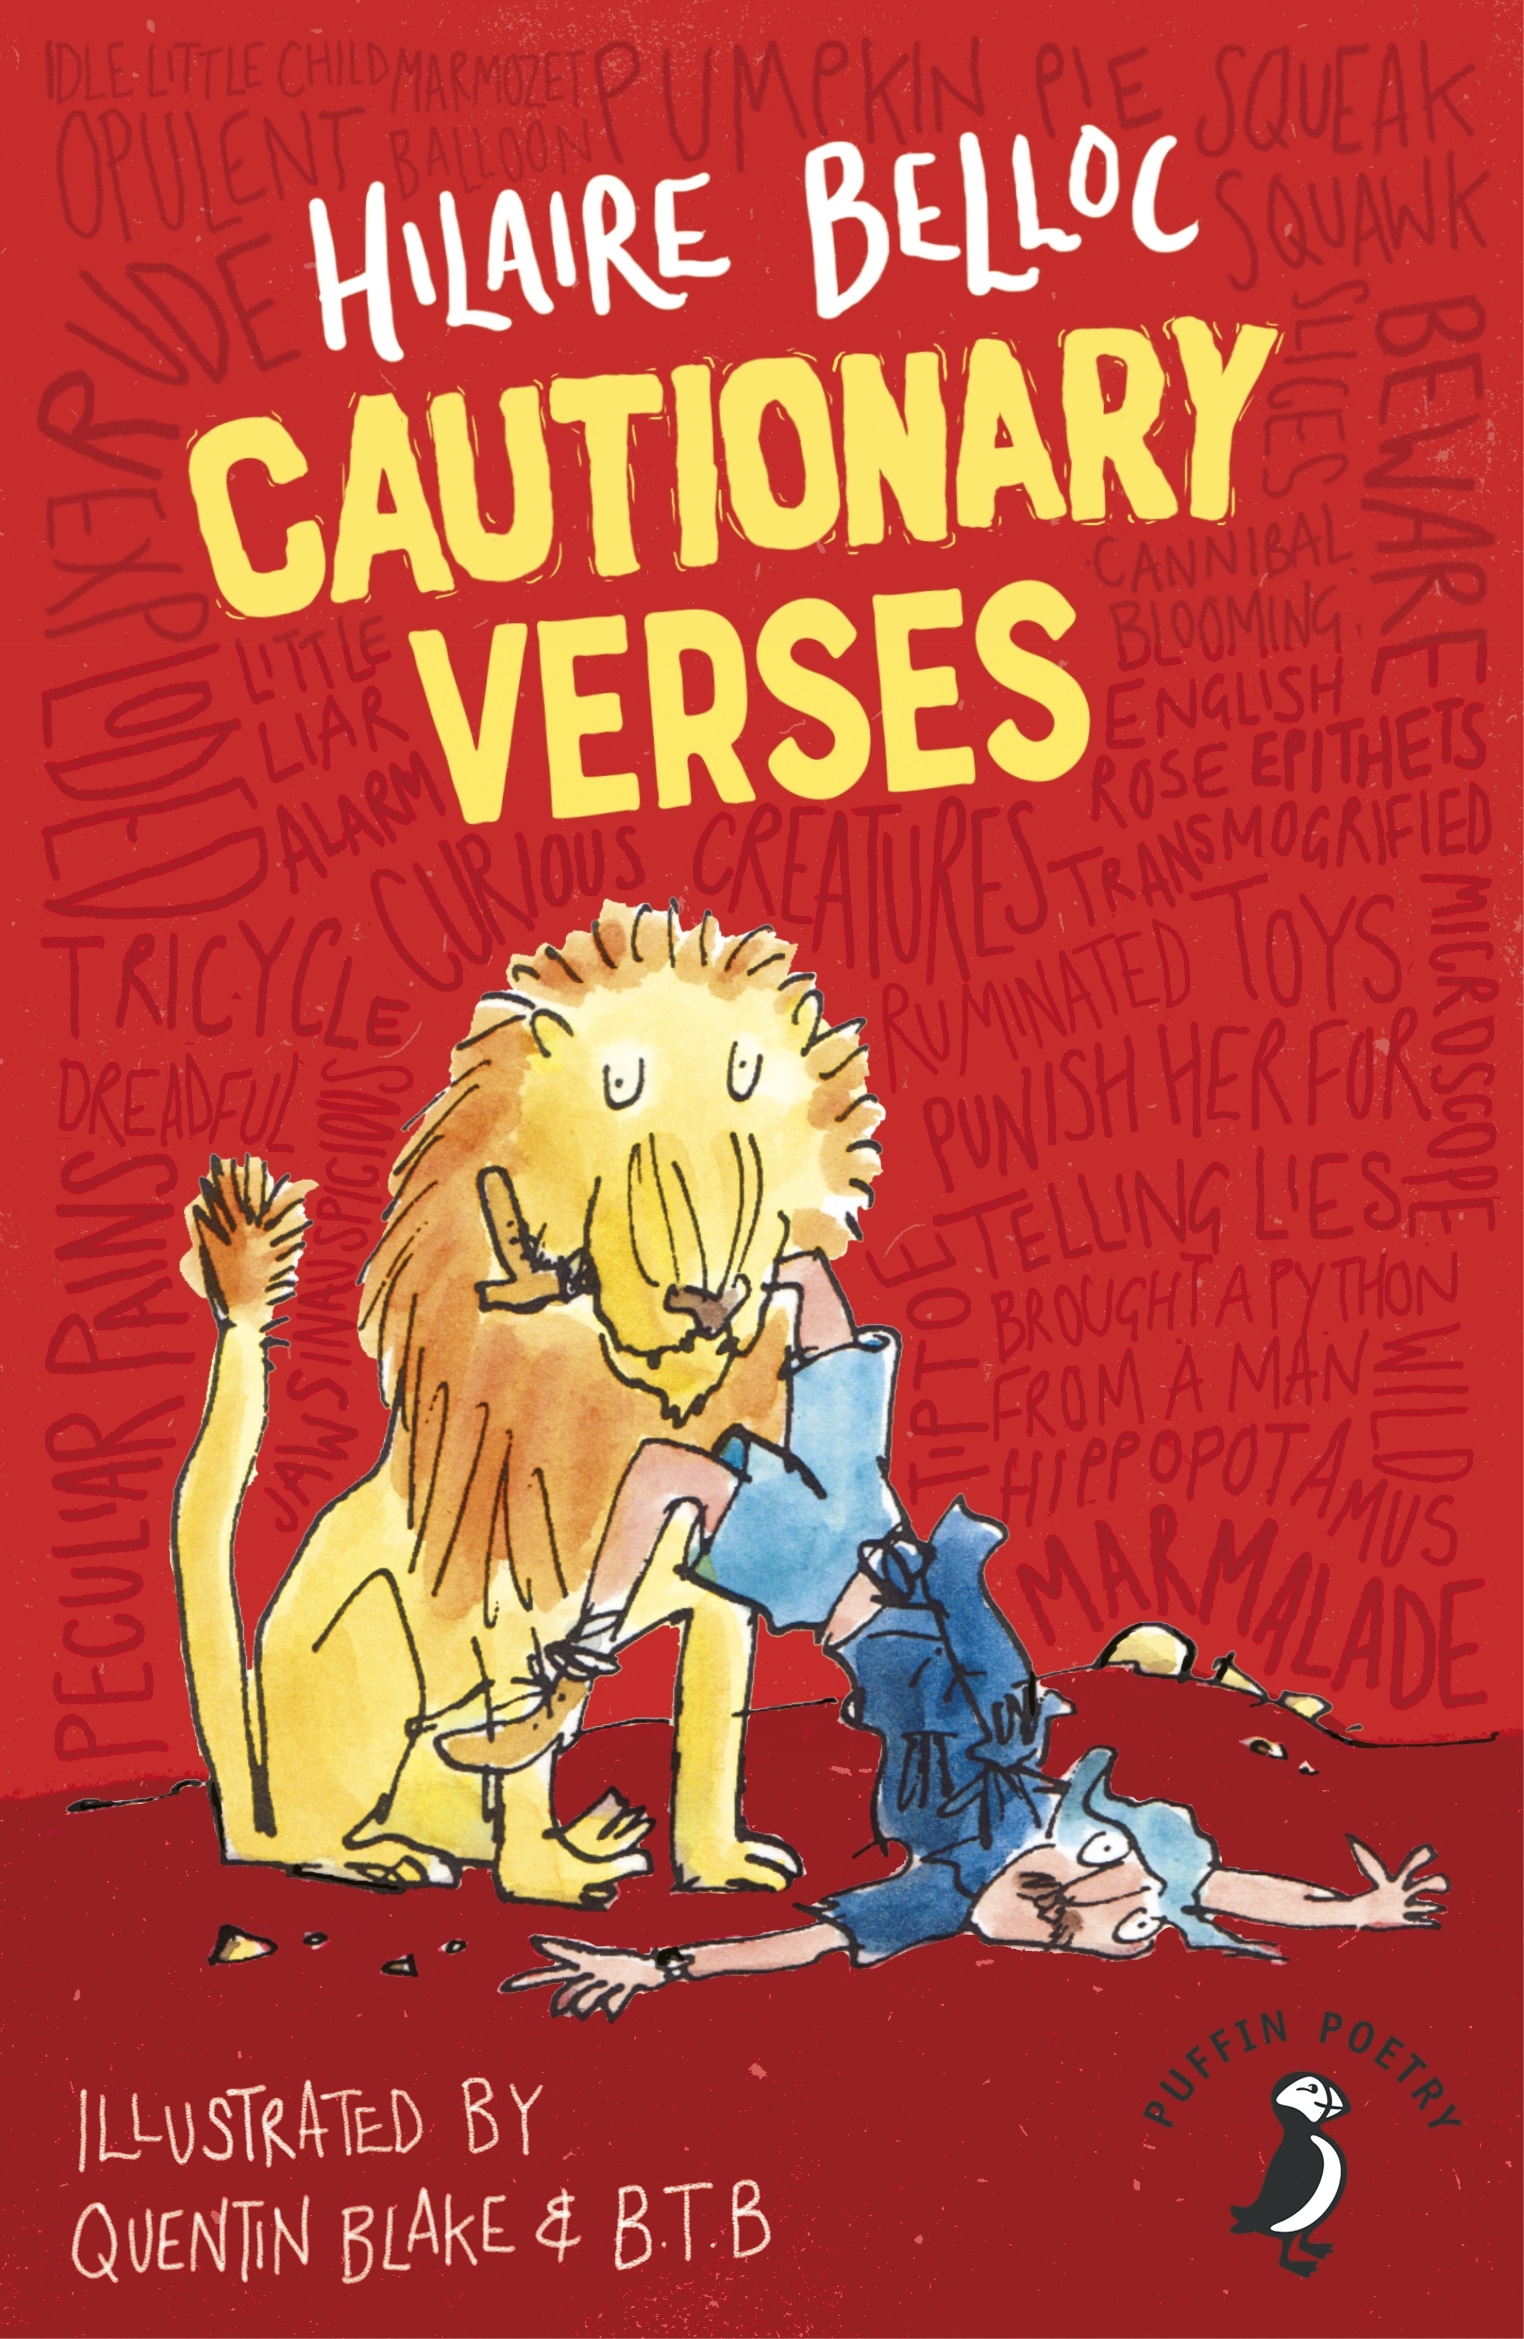 Книга «Cautionary Verses» Hilaire Belloc — 3 октября 2019 г.